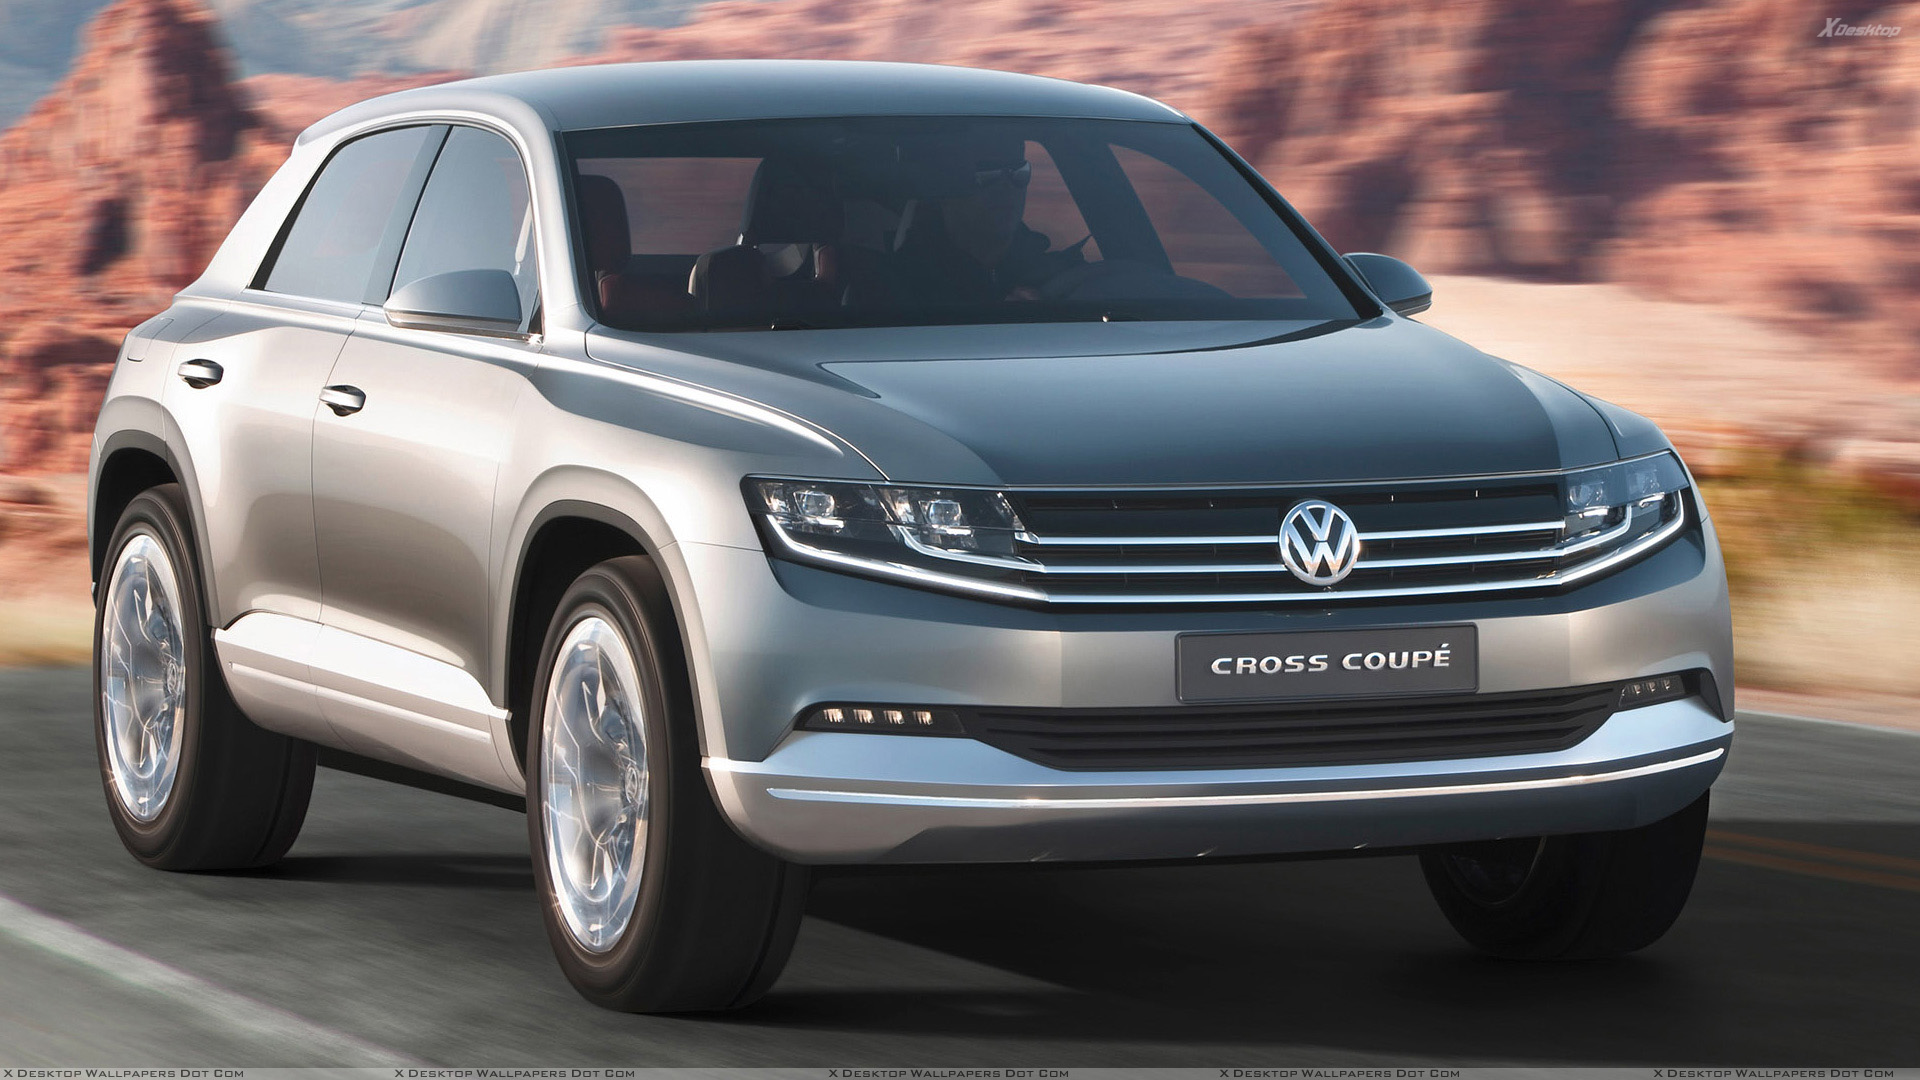 Volkswagen Cross Coupe Wallpapers